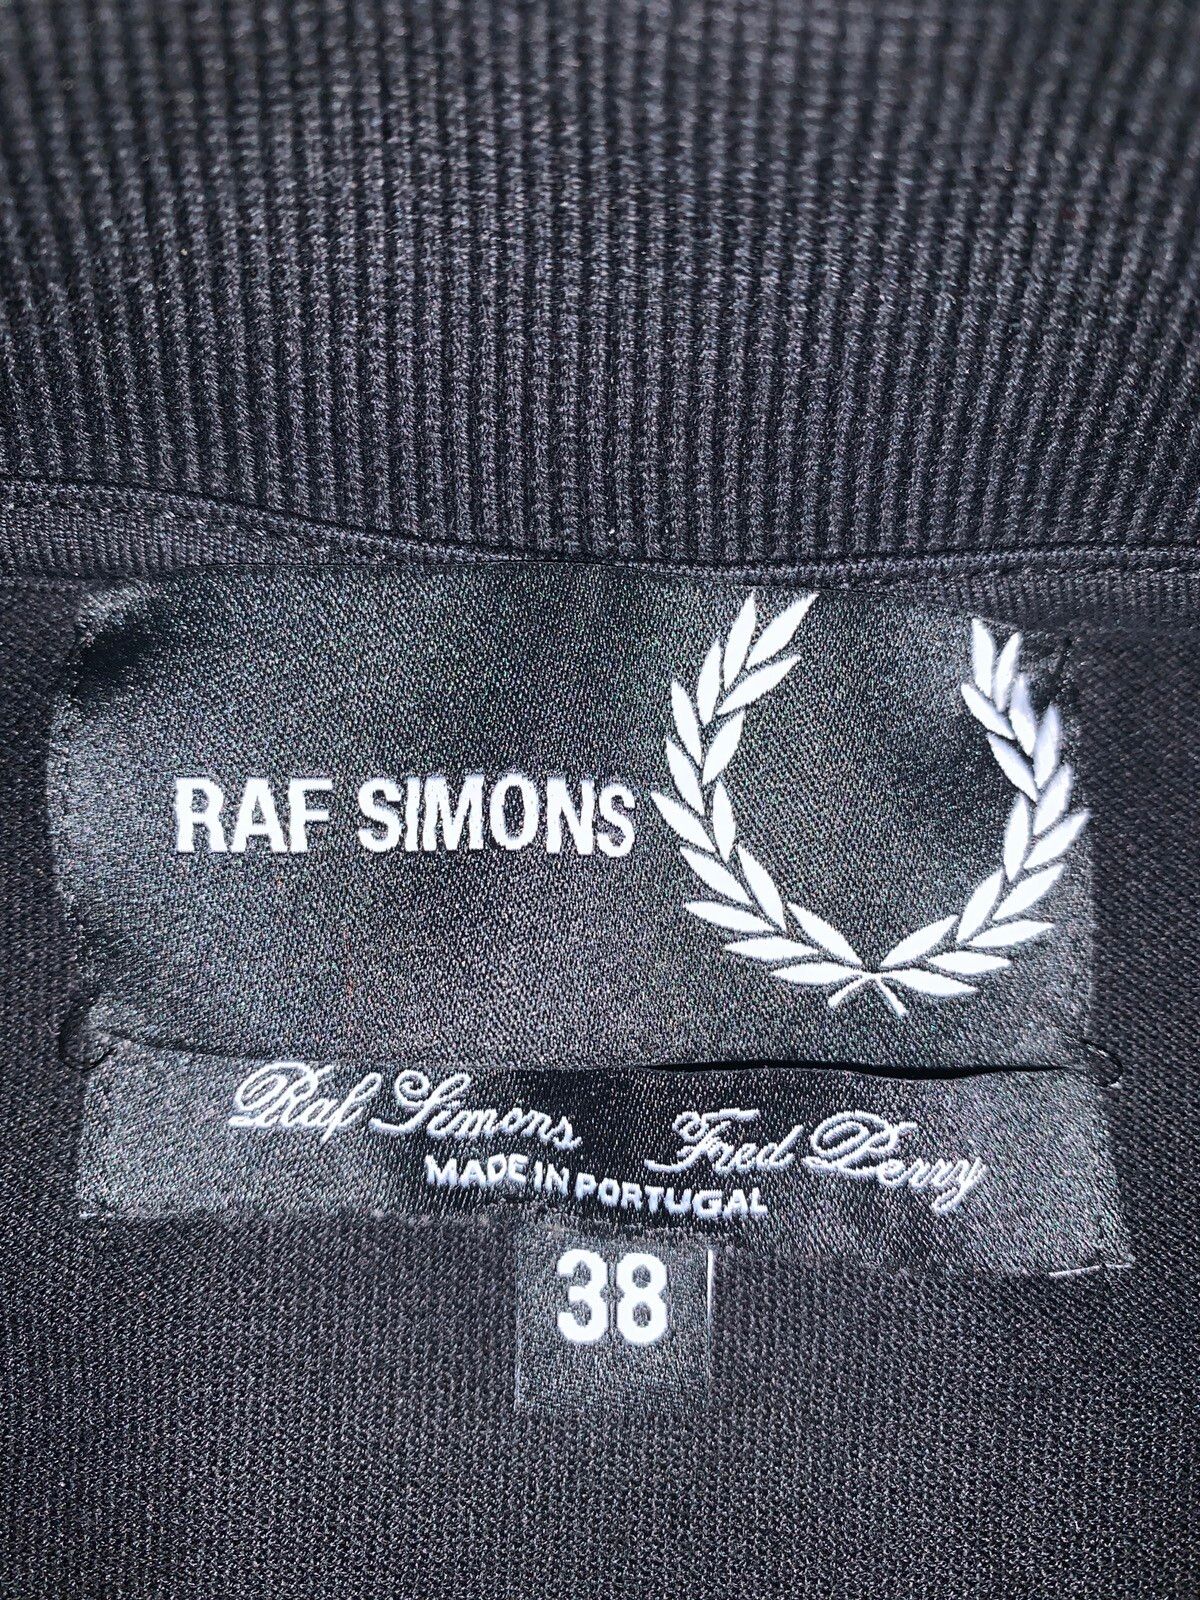 Raf Simons RAF Simons x Fred Perry zip up polo Size US XXS / EU 40 - 4 Thumbnail